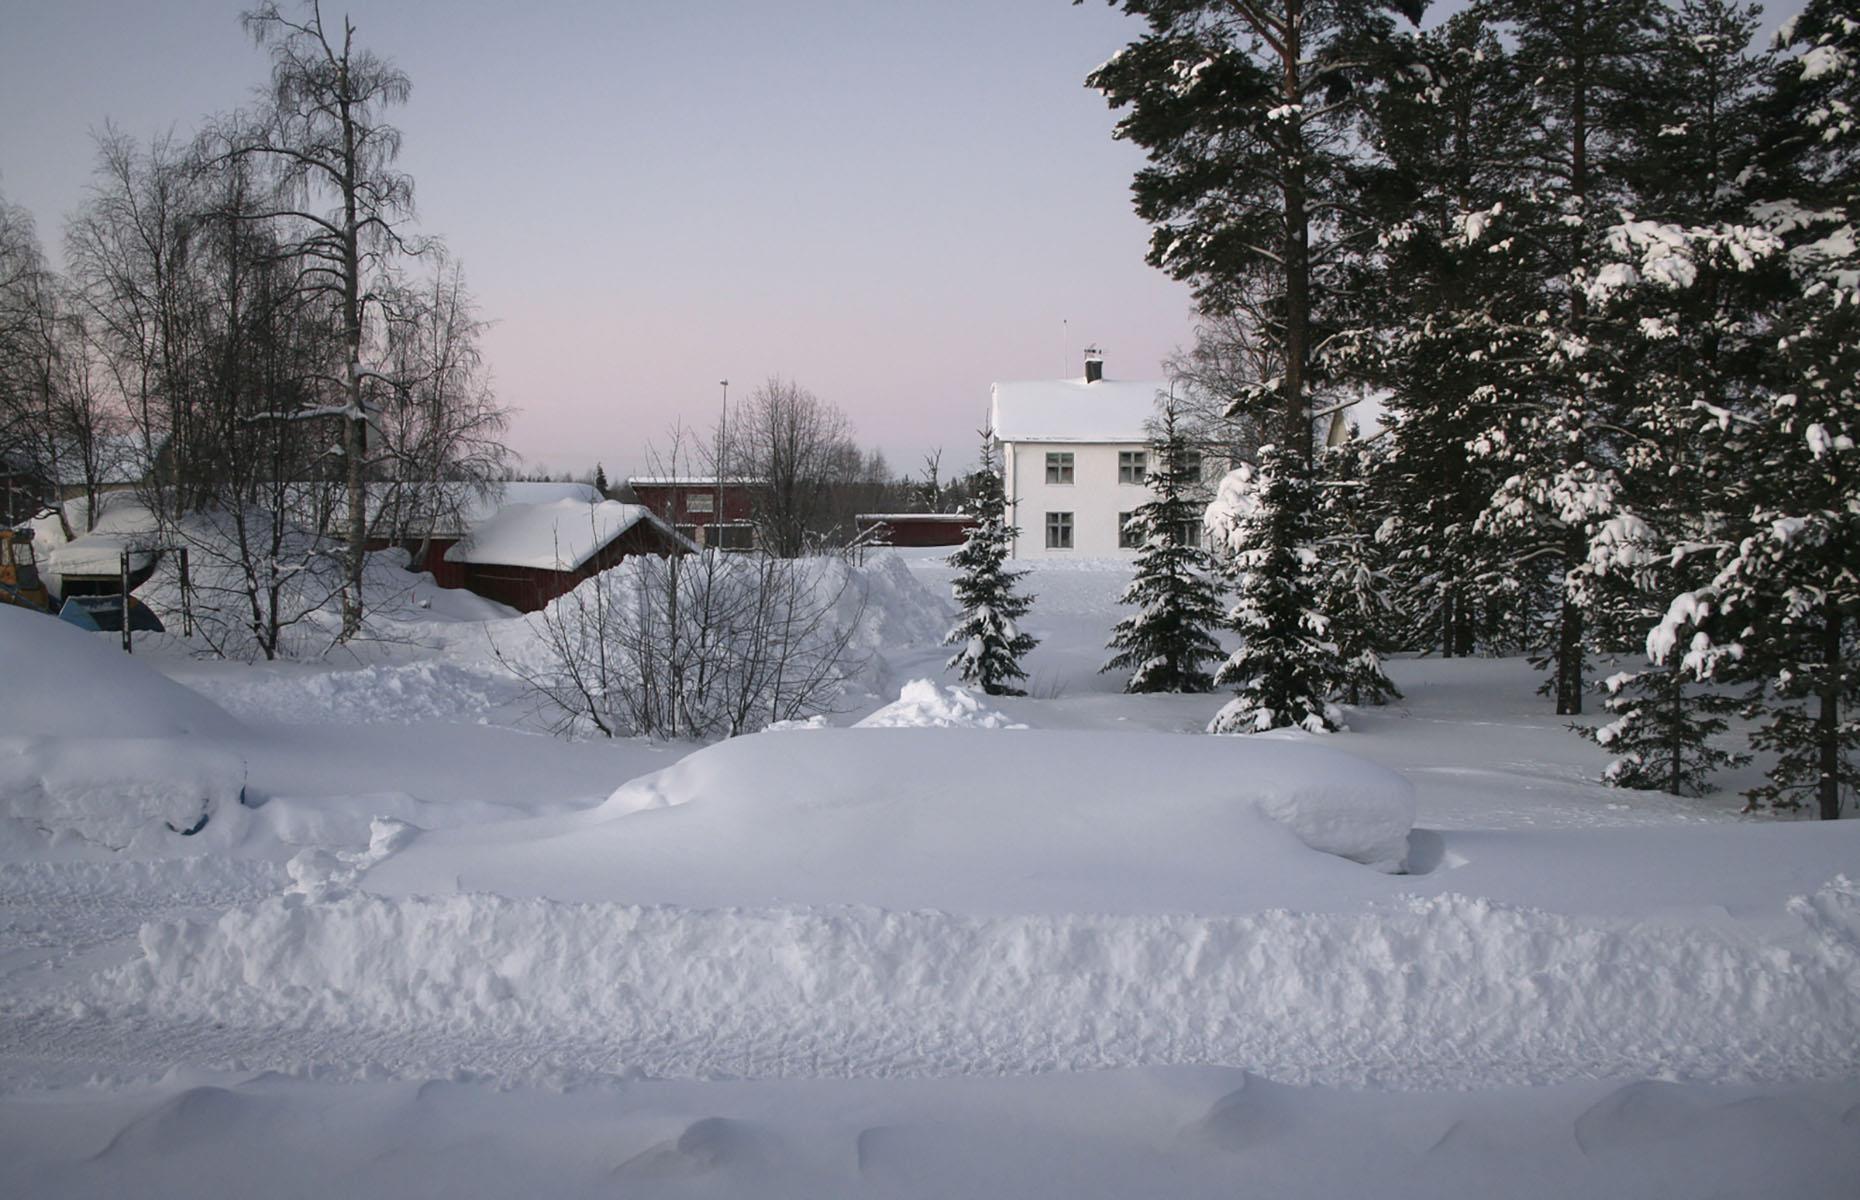 Snow-proof houses, Kiruna, Sweden